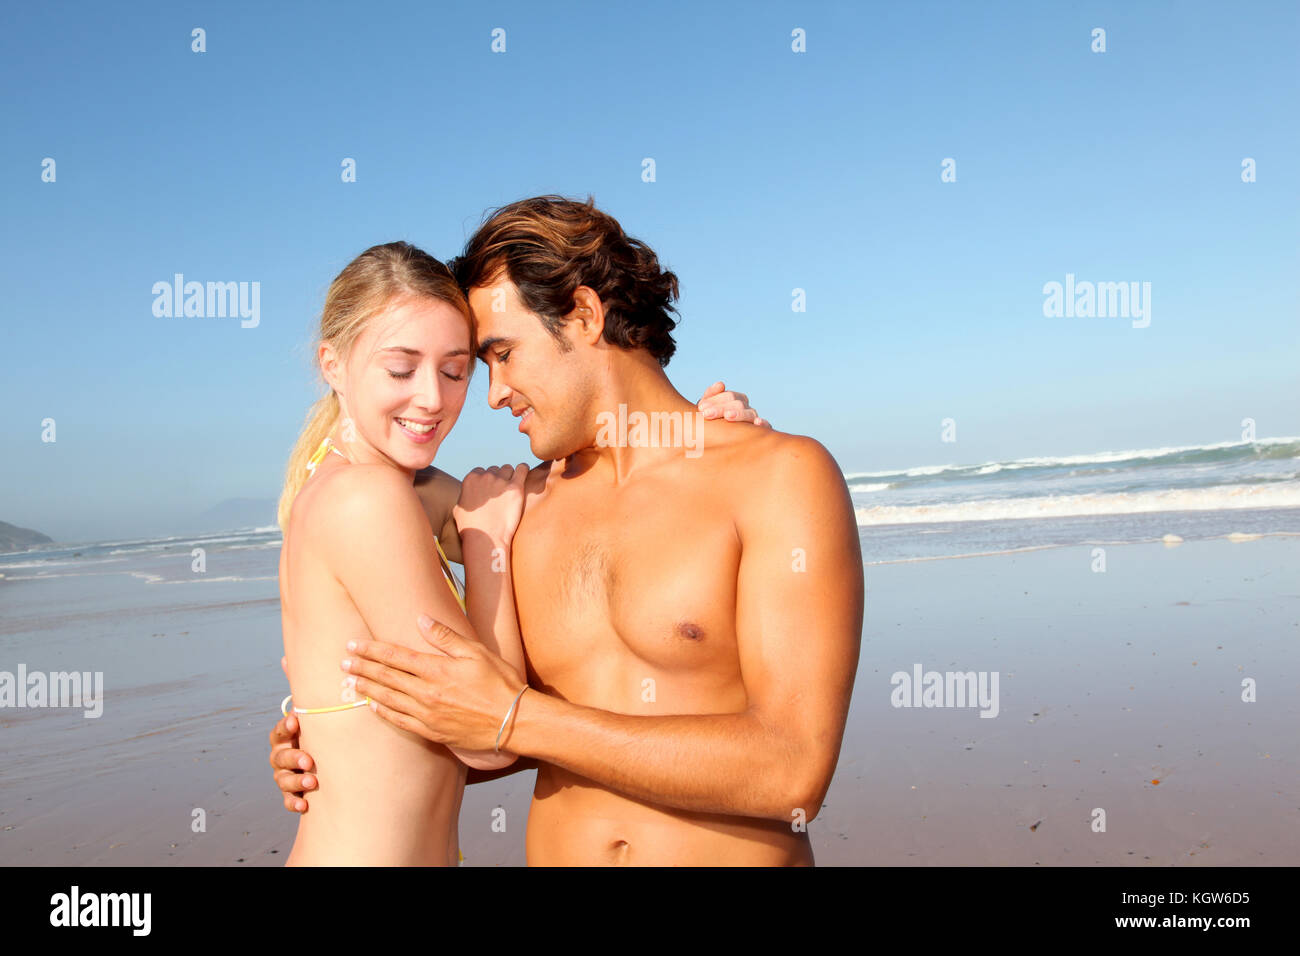 пляжи с голыми семейными парами фото 87